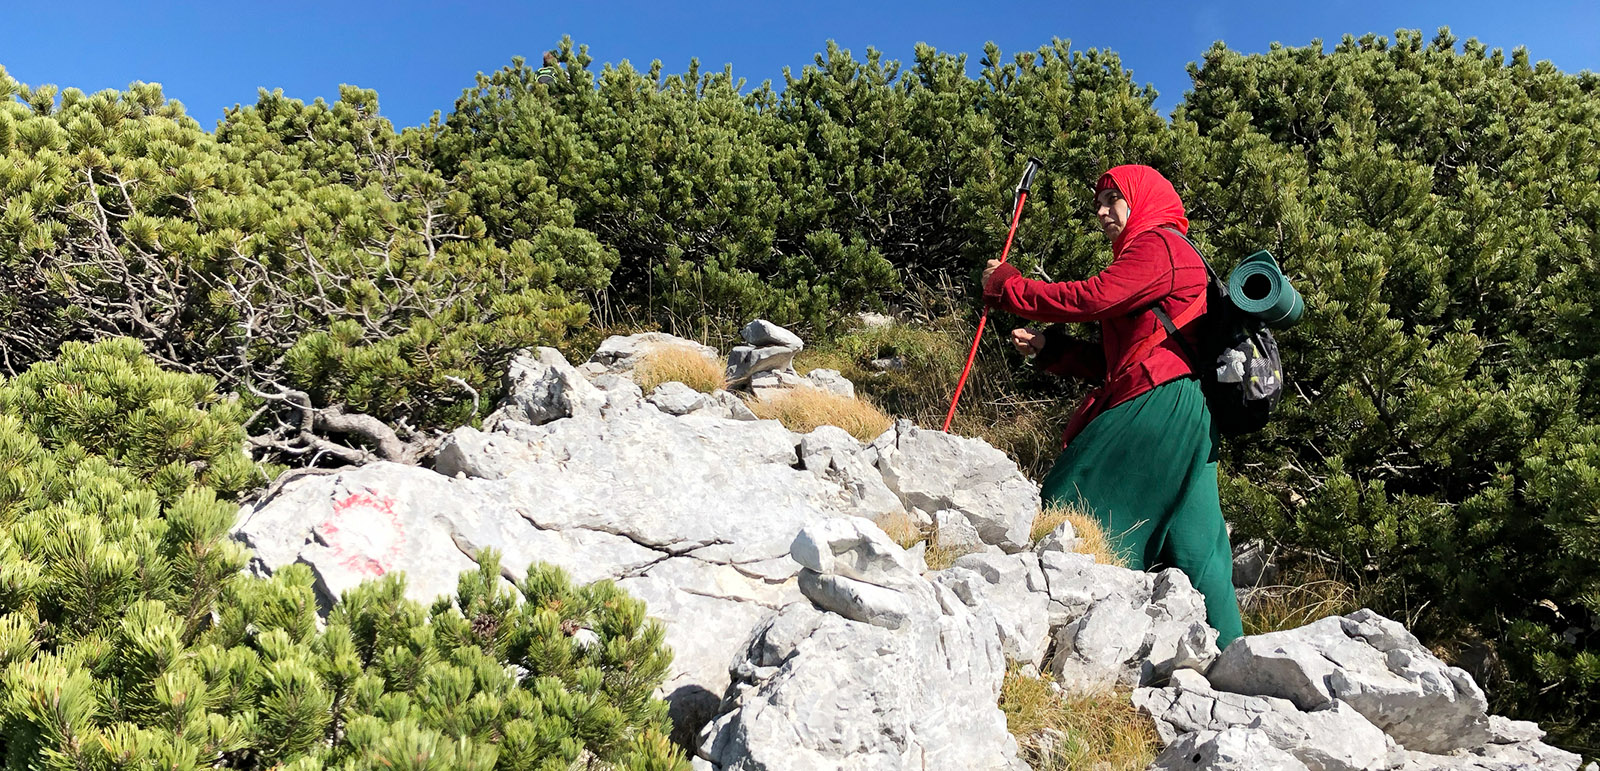 Muslim woman hiking on mountain